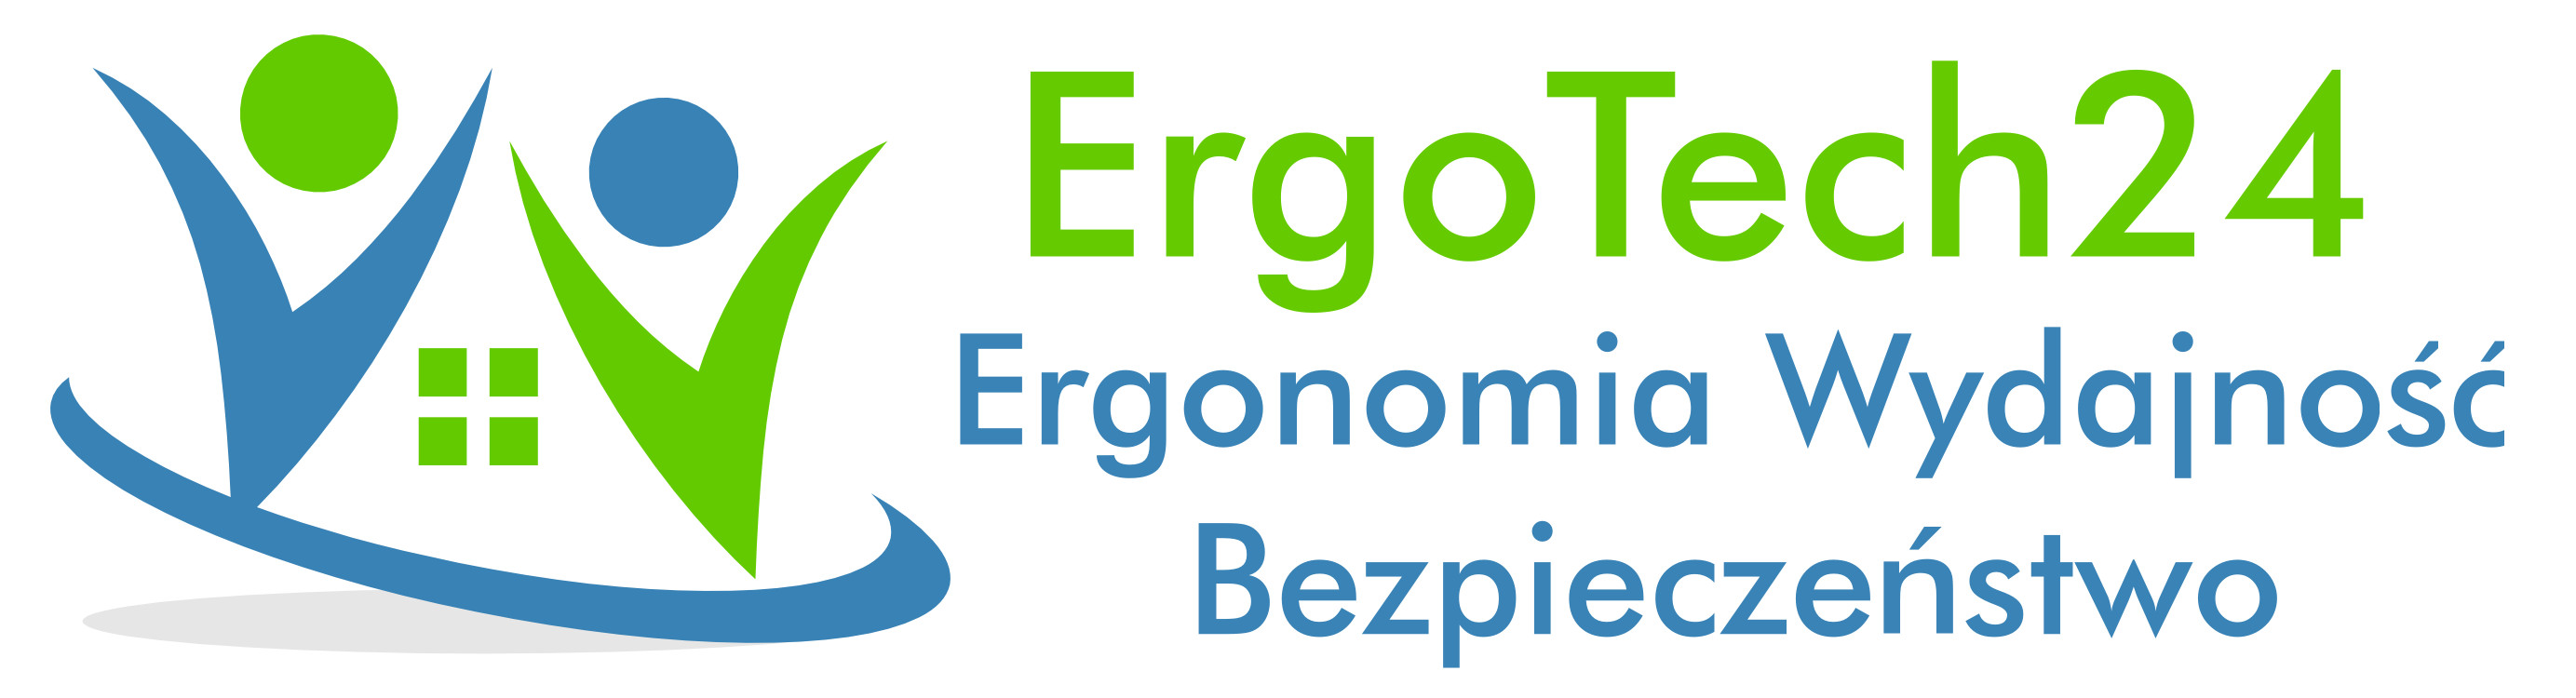 Ergotech24.eu